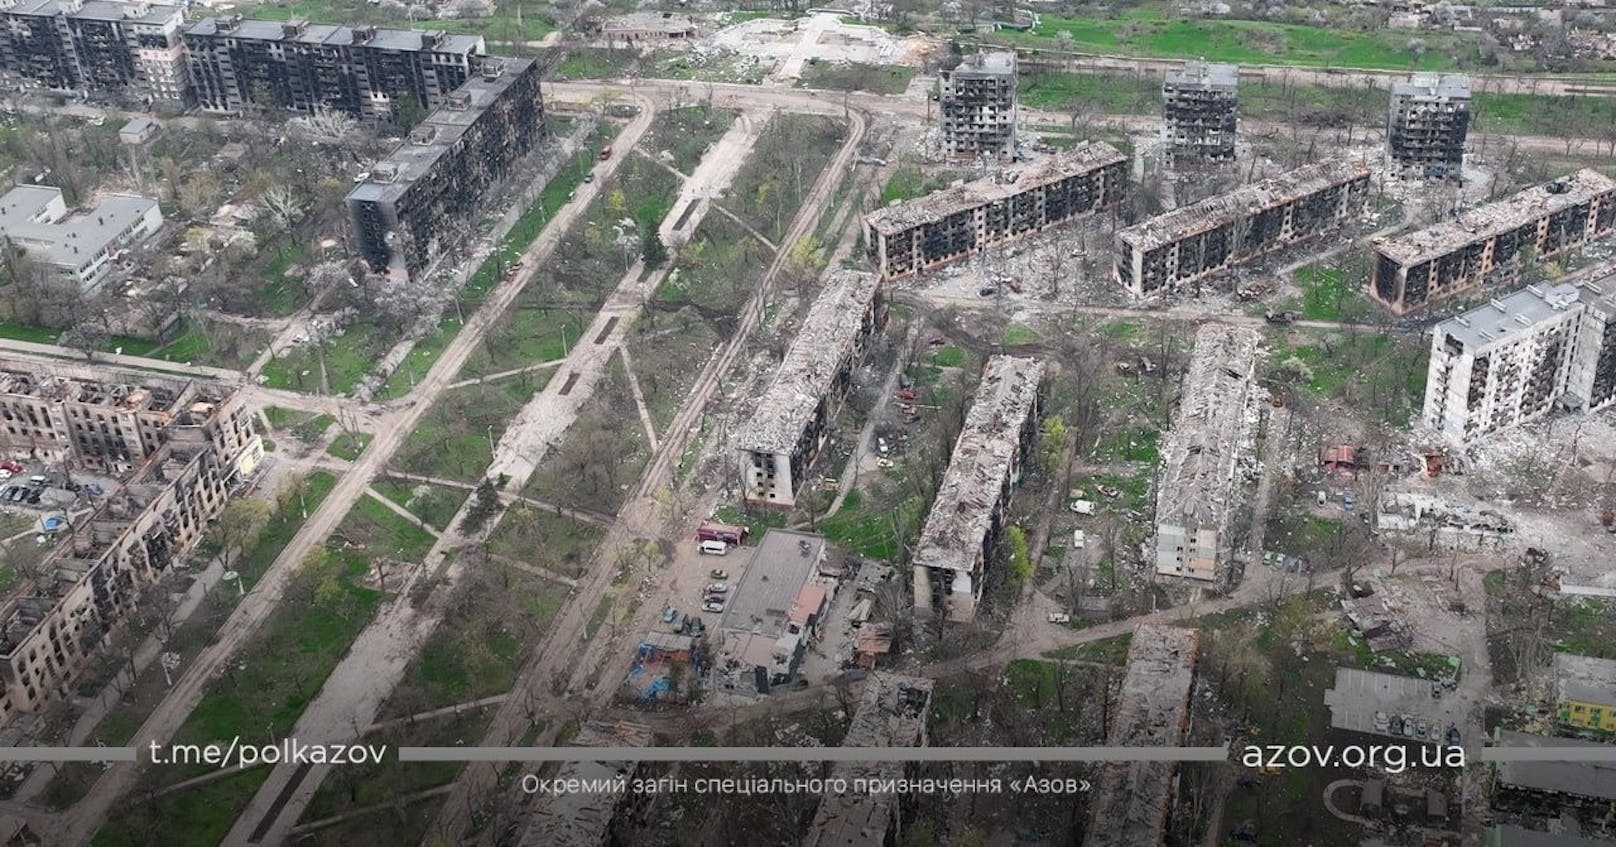 Alles zerstört: Neue Drohnen-Fotos zeigen die Trümmer von Mariupol, 24. April 2022.